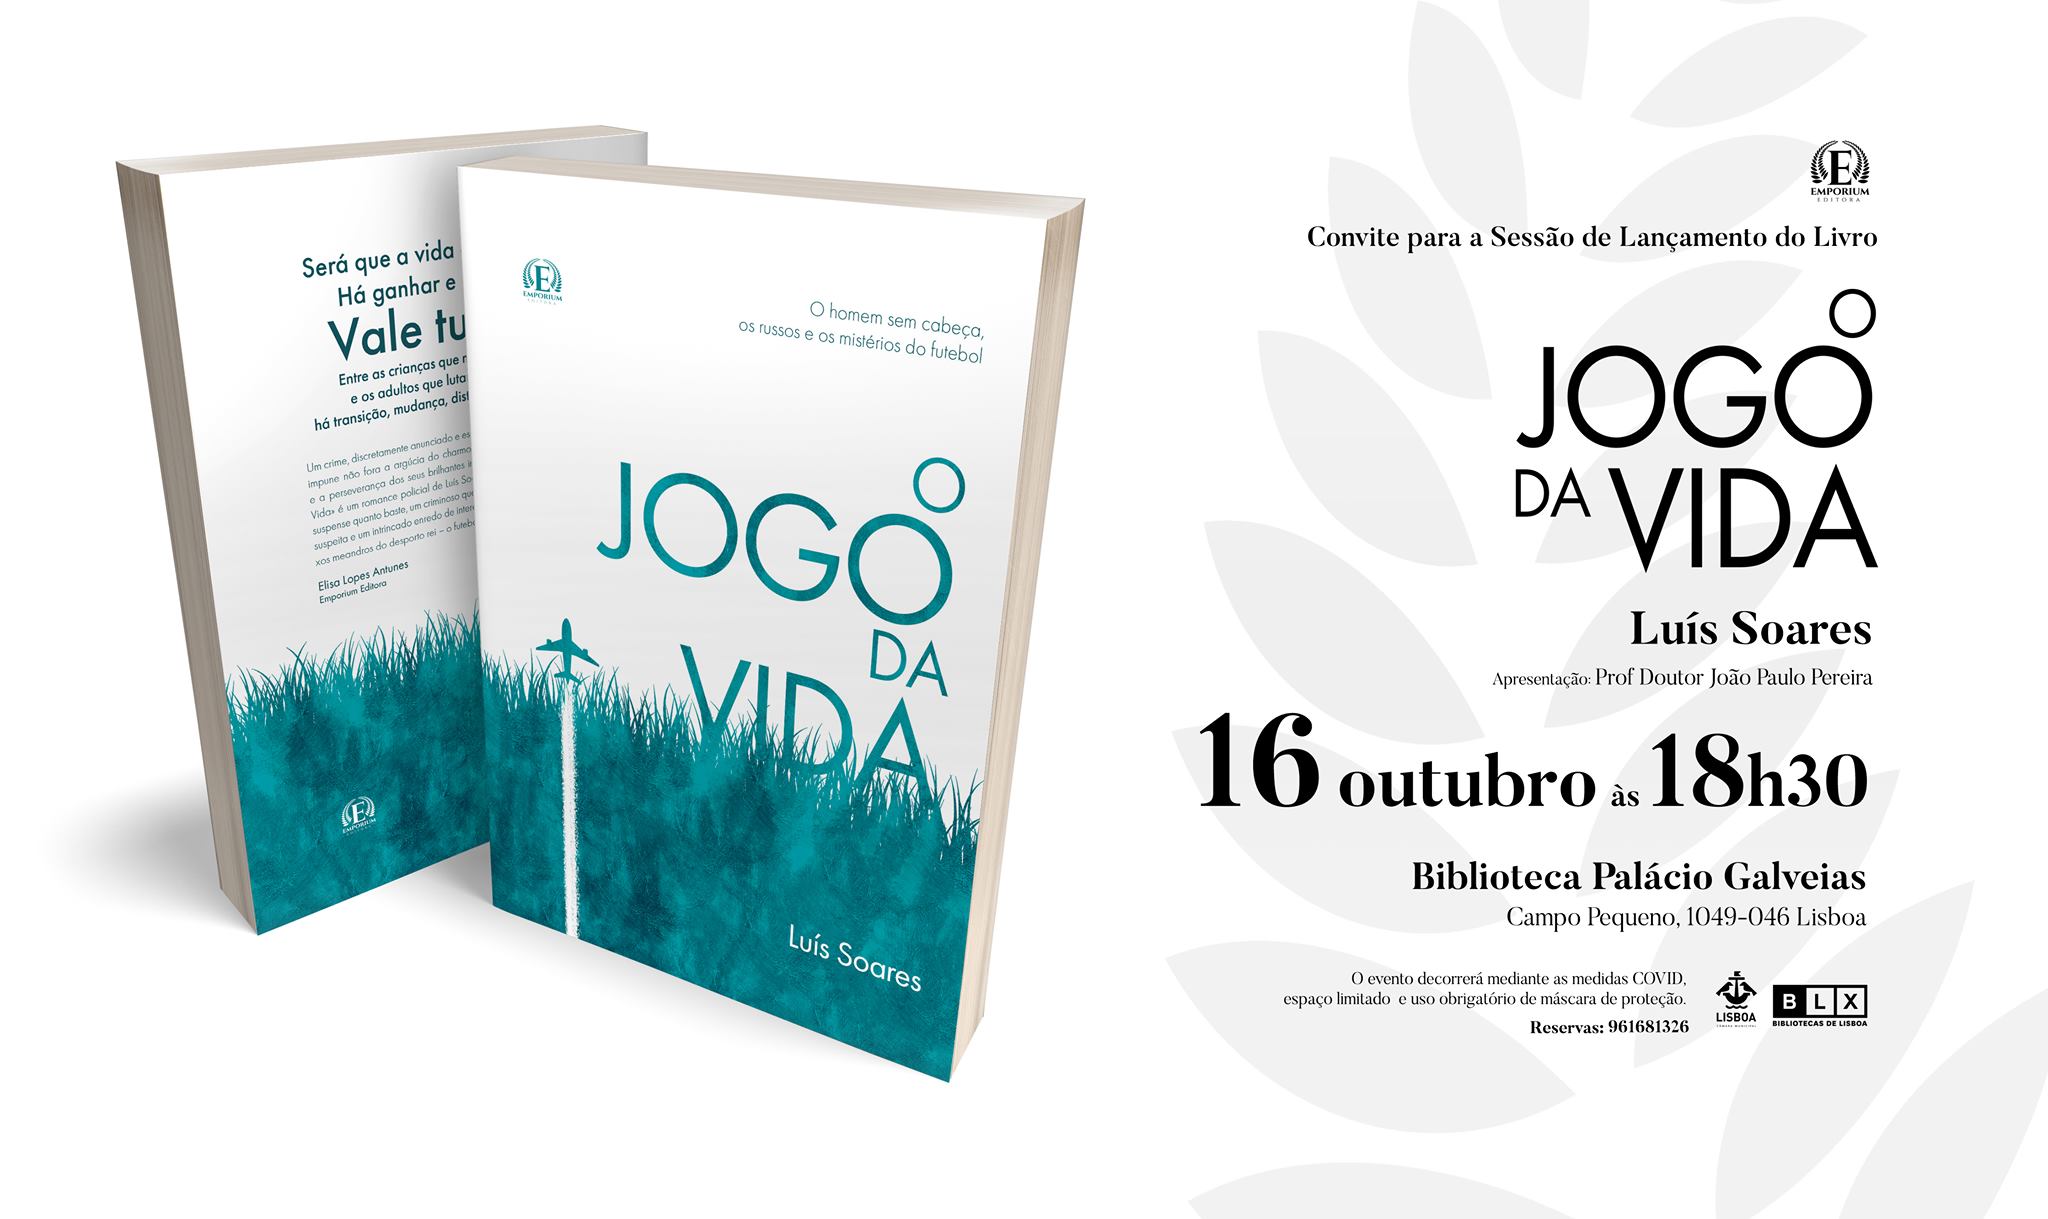 Lançamento do Livro 'O Jogo da Vida', de Luís Soares